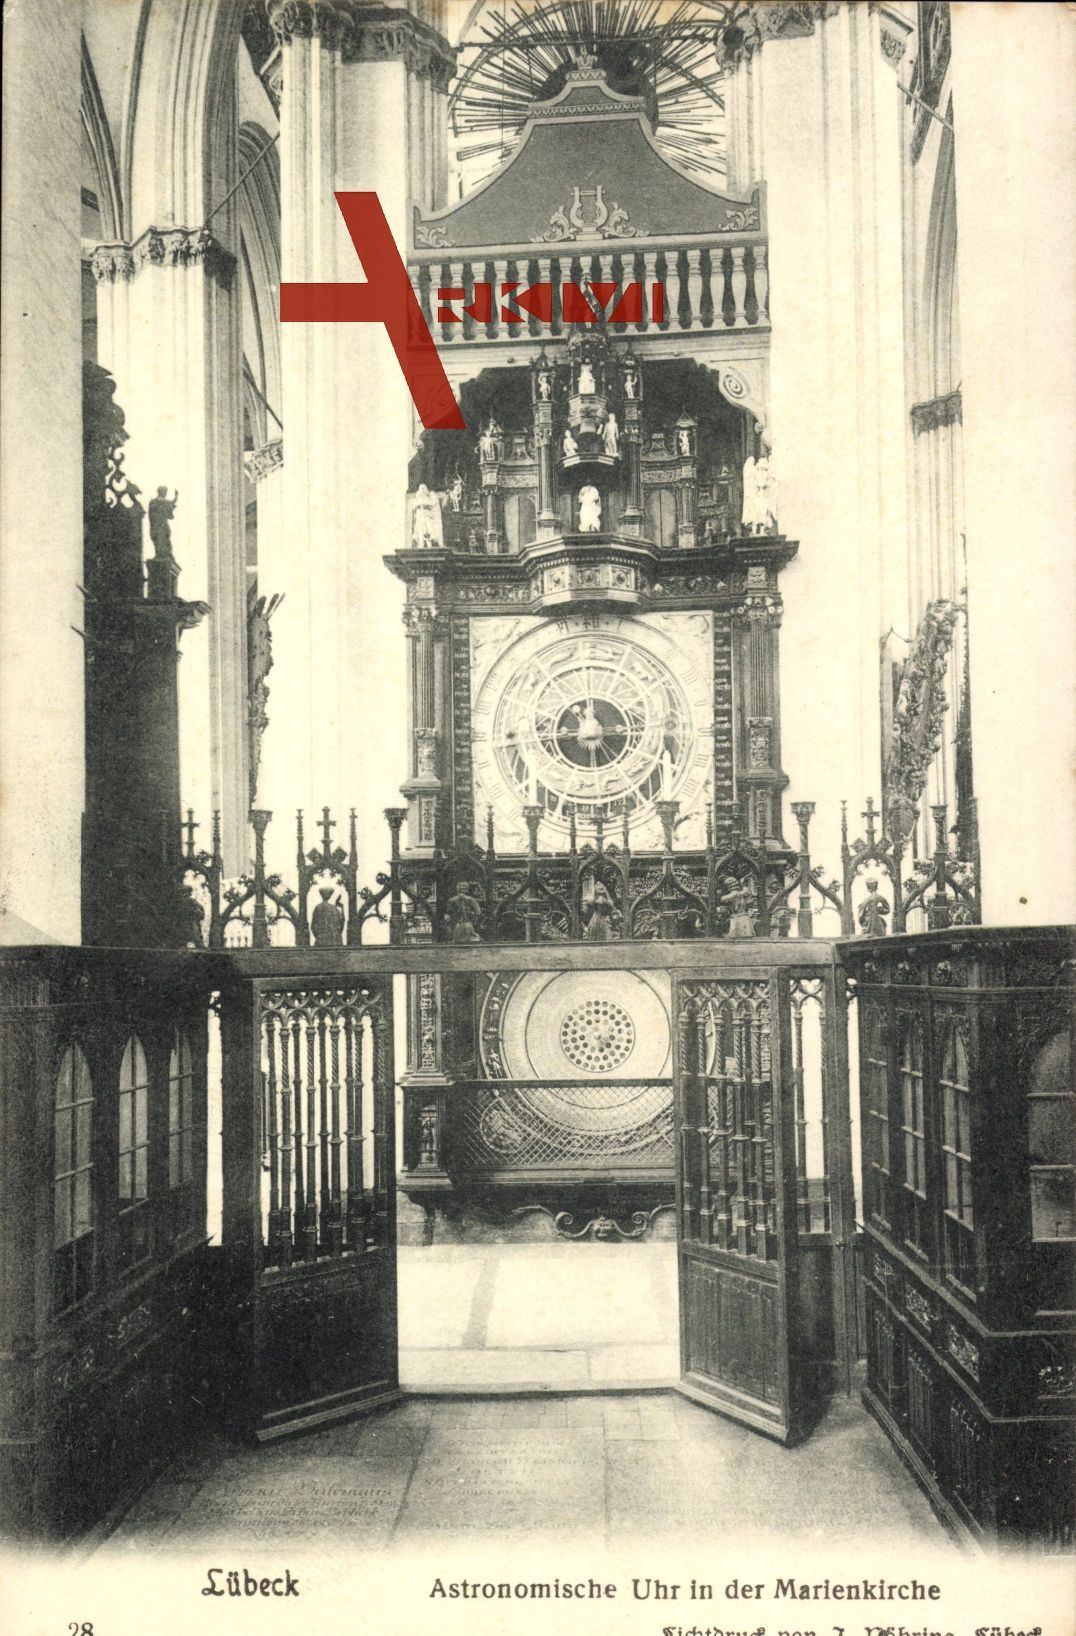 Lübeck, Hansestadt, Astronomische Uhr in der Marienkirche